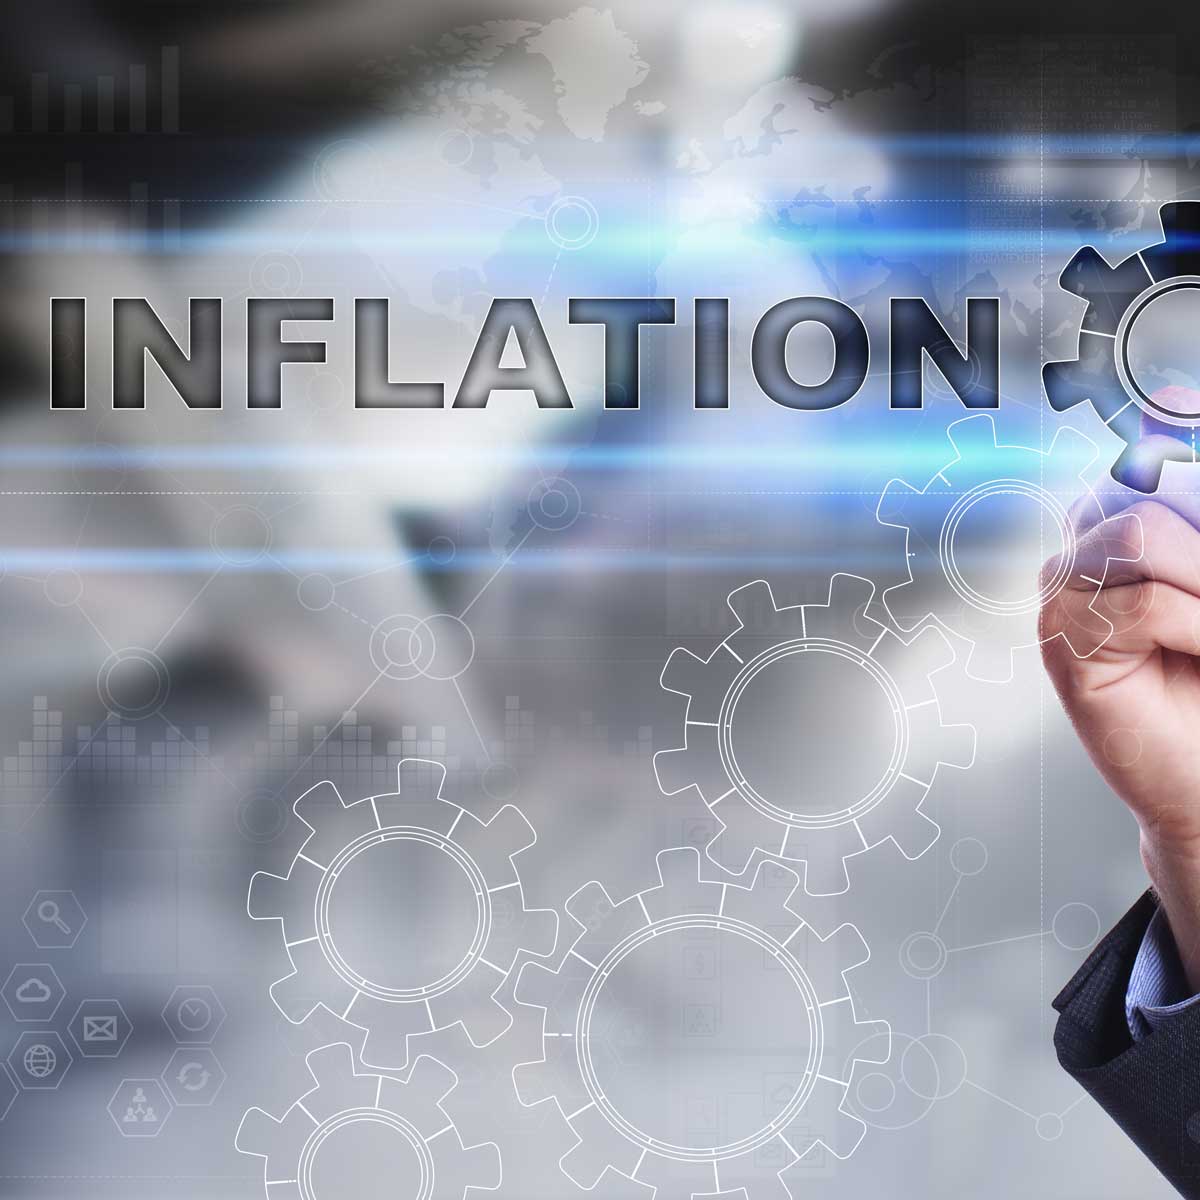 Titelbild zum Blog Das wichtigste Kriterium bei einer Kapitalanlage ist...die Inflation 1 / 2